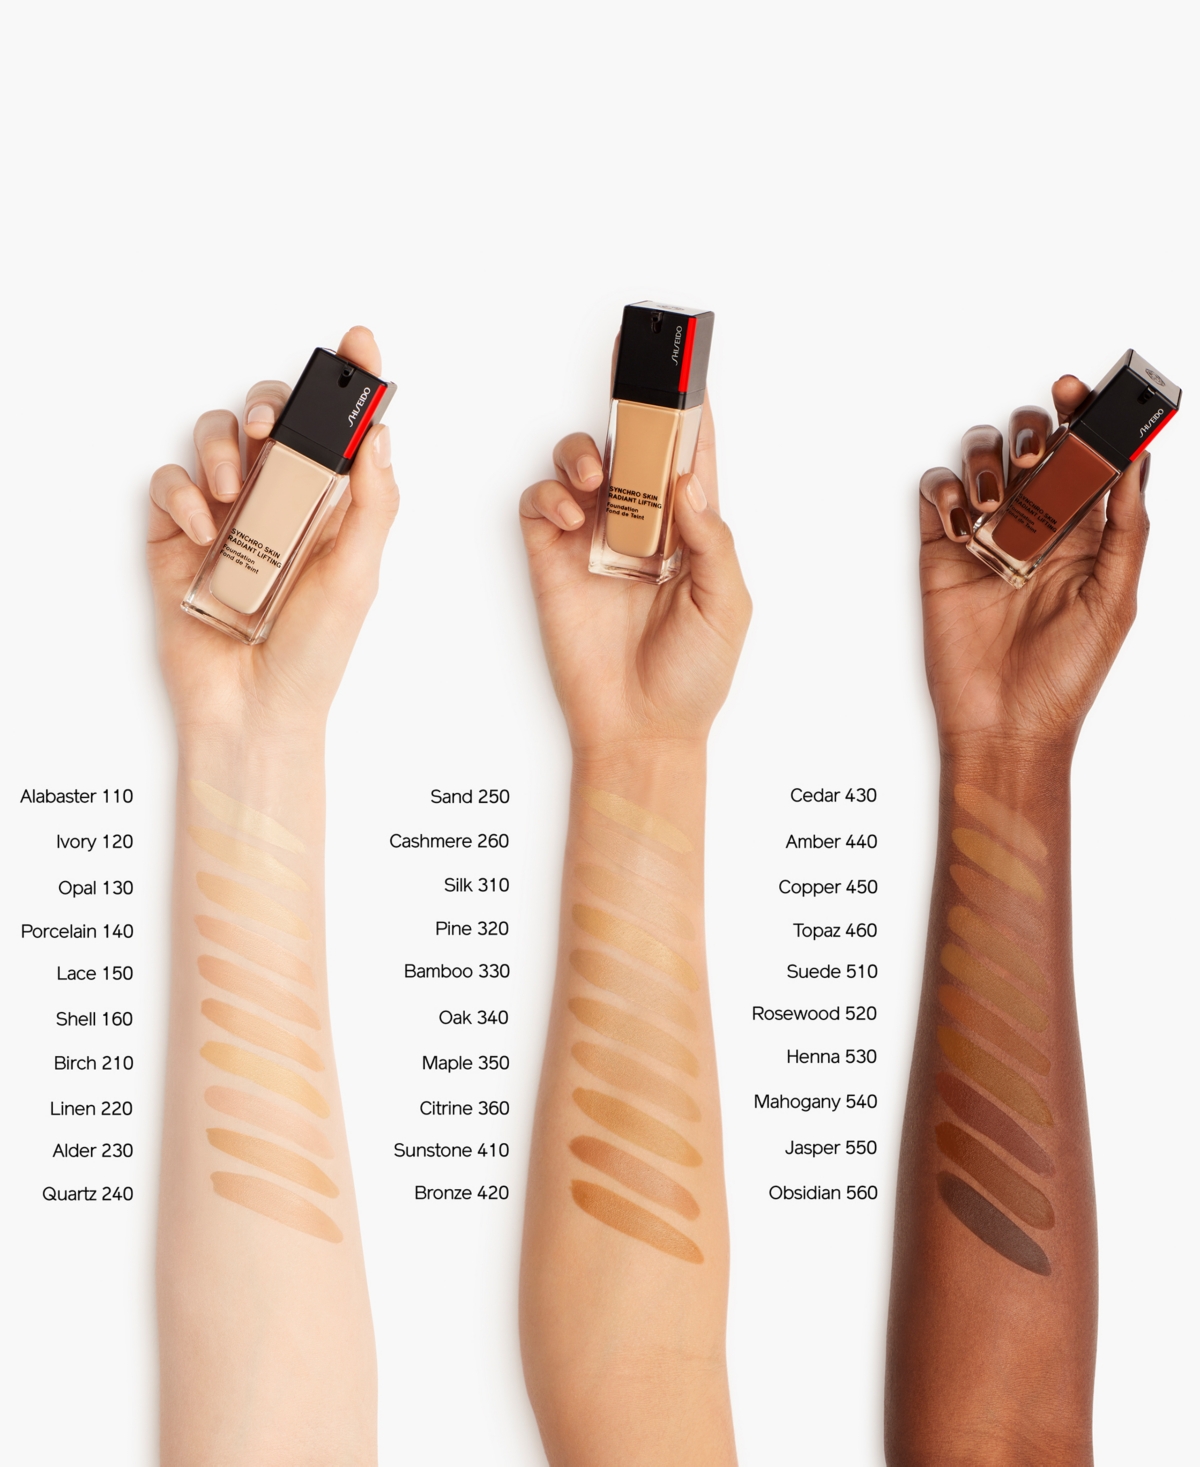 Shop Shiseido Synchro Skin Radiant Lifting Foundation, 30 ml In Linen - Balanced Tone For Light Skin,ne